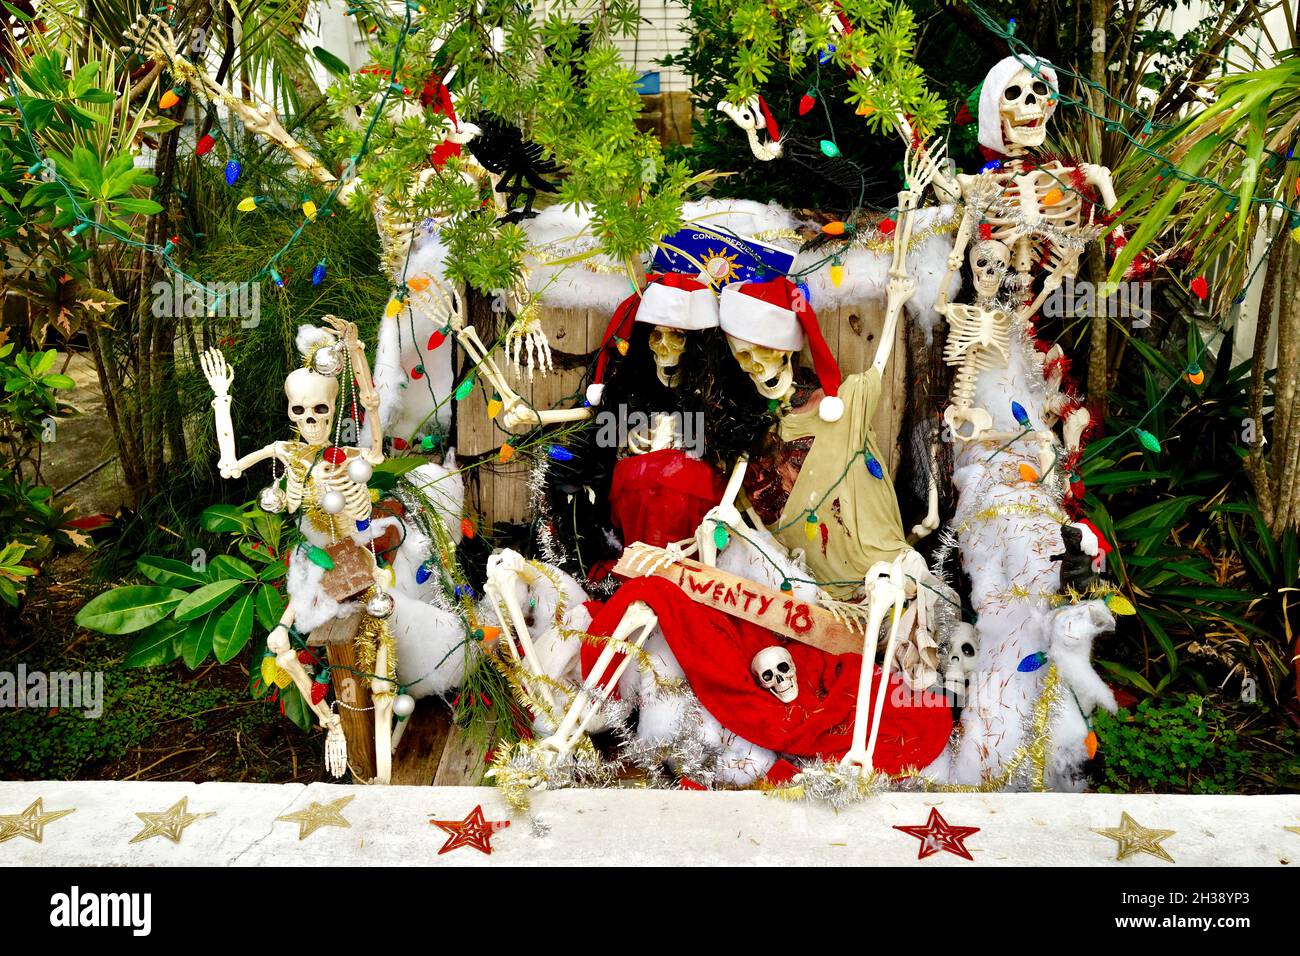 Exposition de Noël des squelettes célébrant à Key West, FL, États-Unis.Très graphique, couleurs saturées, photographie horizontale. Banque D'Images